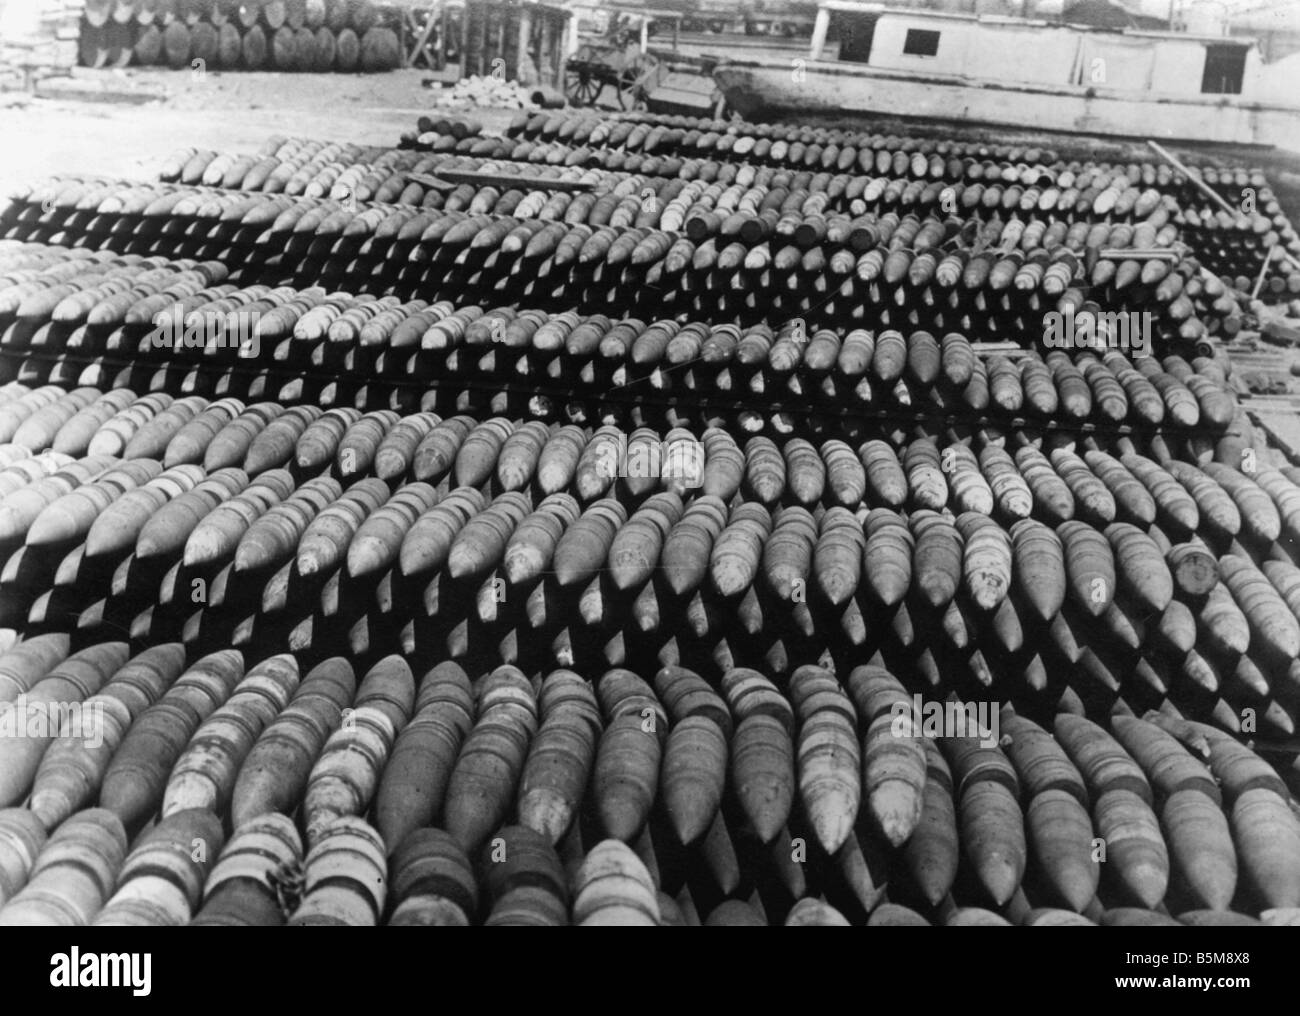 Reihen von deutschen Granaten WWI 1918 Geschichte Weltkrieg Krieg Beute Ende des Krieges 1918 Muscheln gefangen Deutsch in Pewark Foto Stockfoto